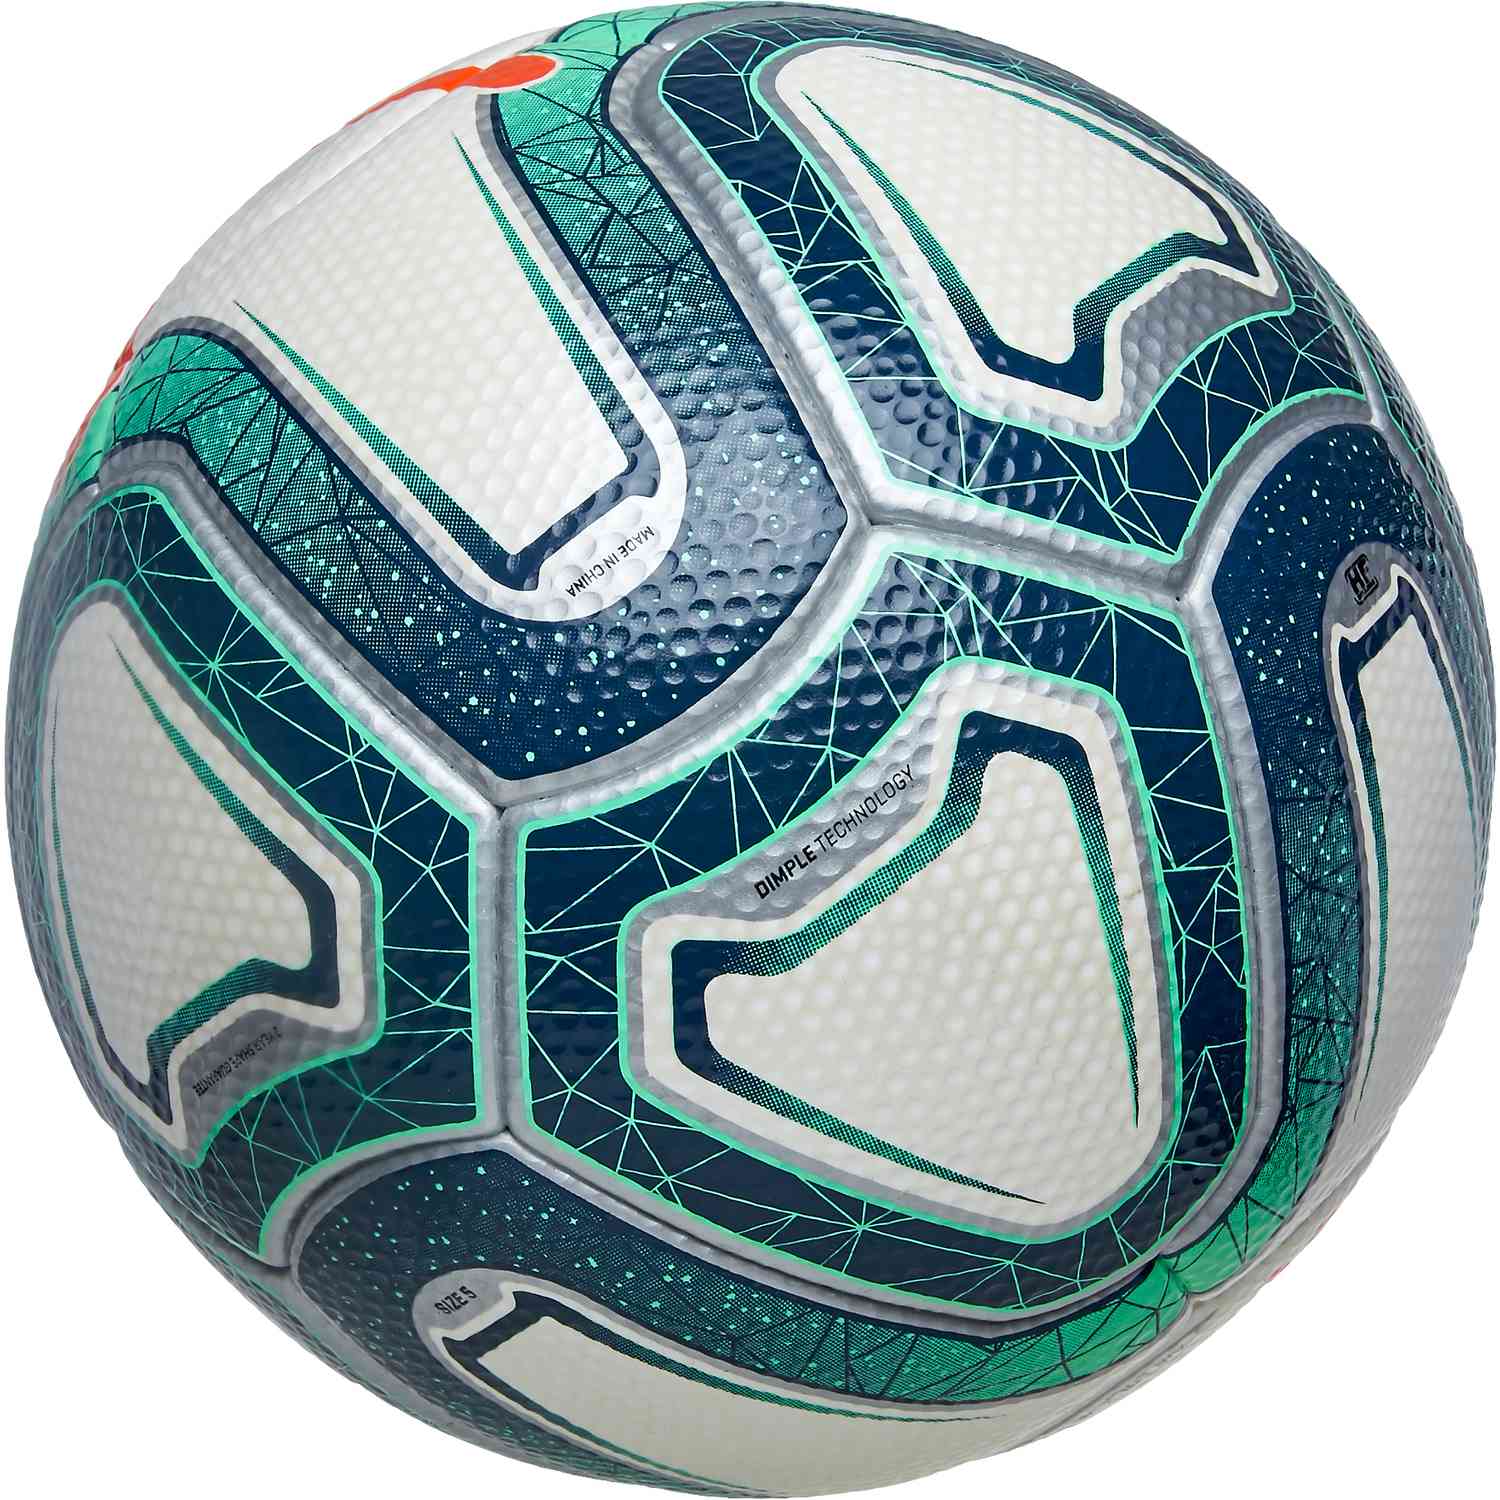 puma official match ball